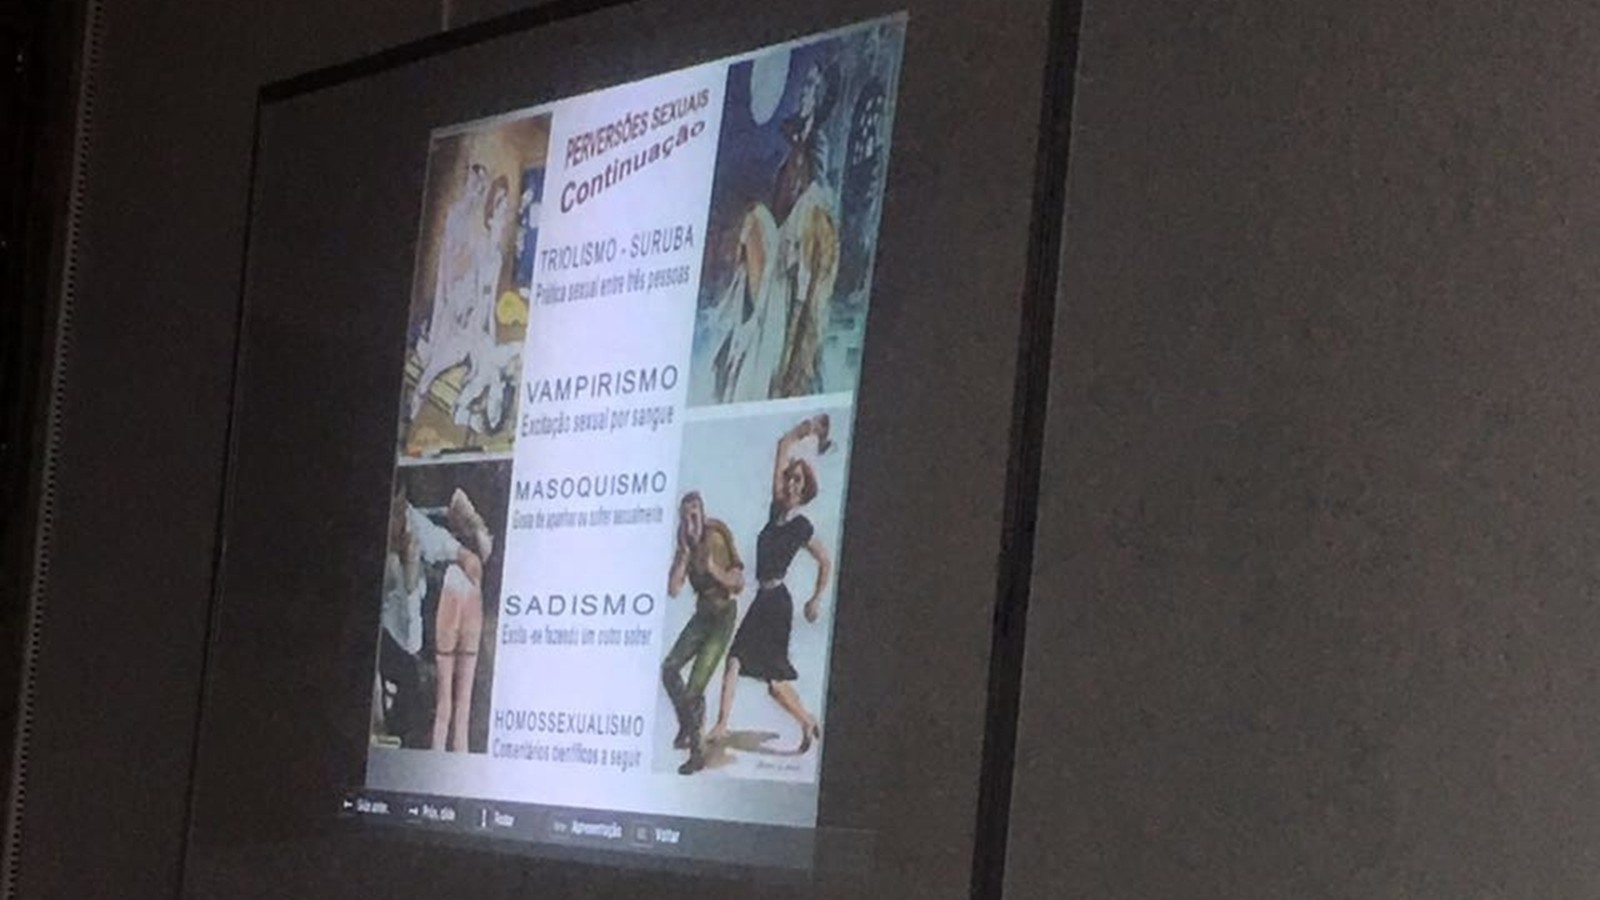 Projeção em sala de aula classifica 'homossexualismo' como 'perversão sexual' (Foto: Diógenes Dantas/Arquivo Pessoal)